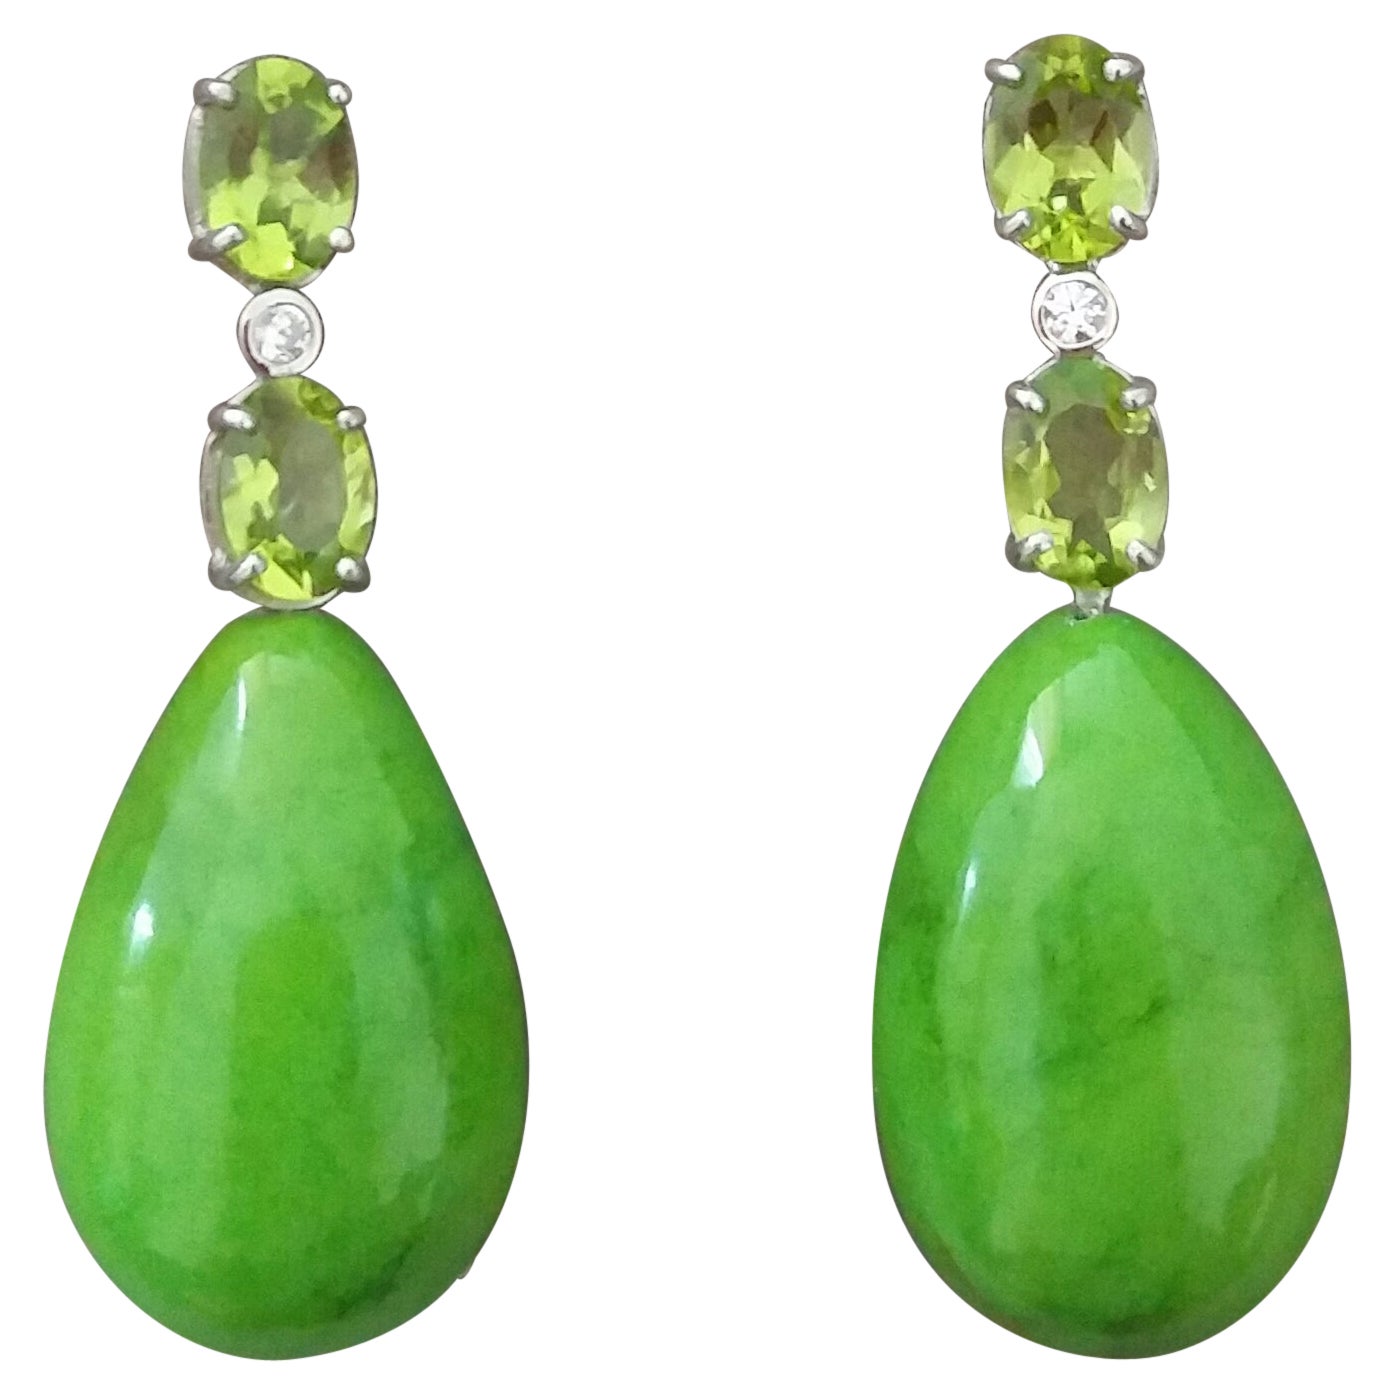 2 Oval Peridot Gold Diamonds 2 Green Turkmenistan Turquoise Drops Earrings For Sale